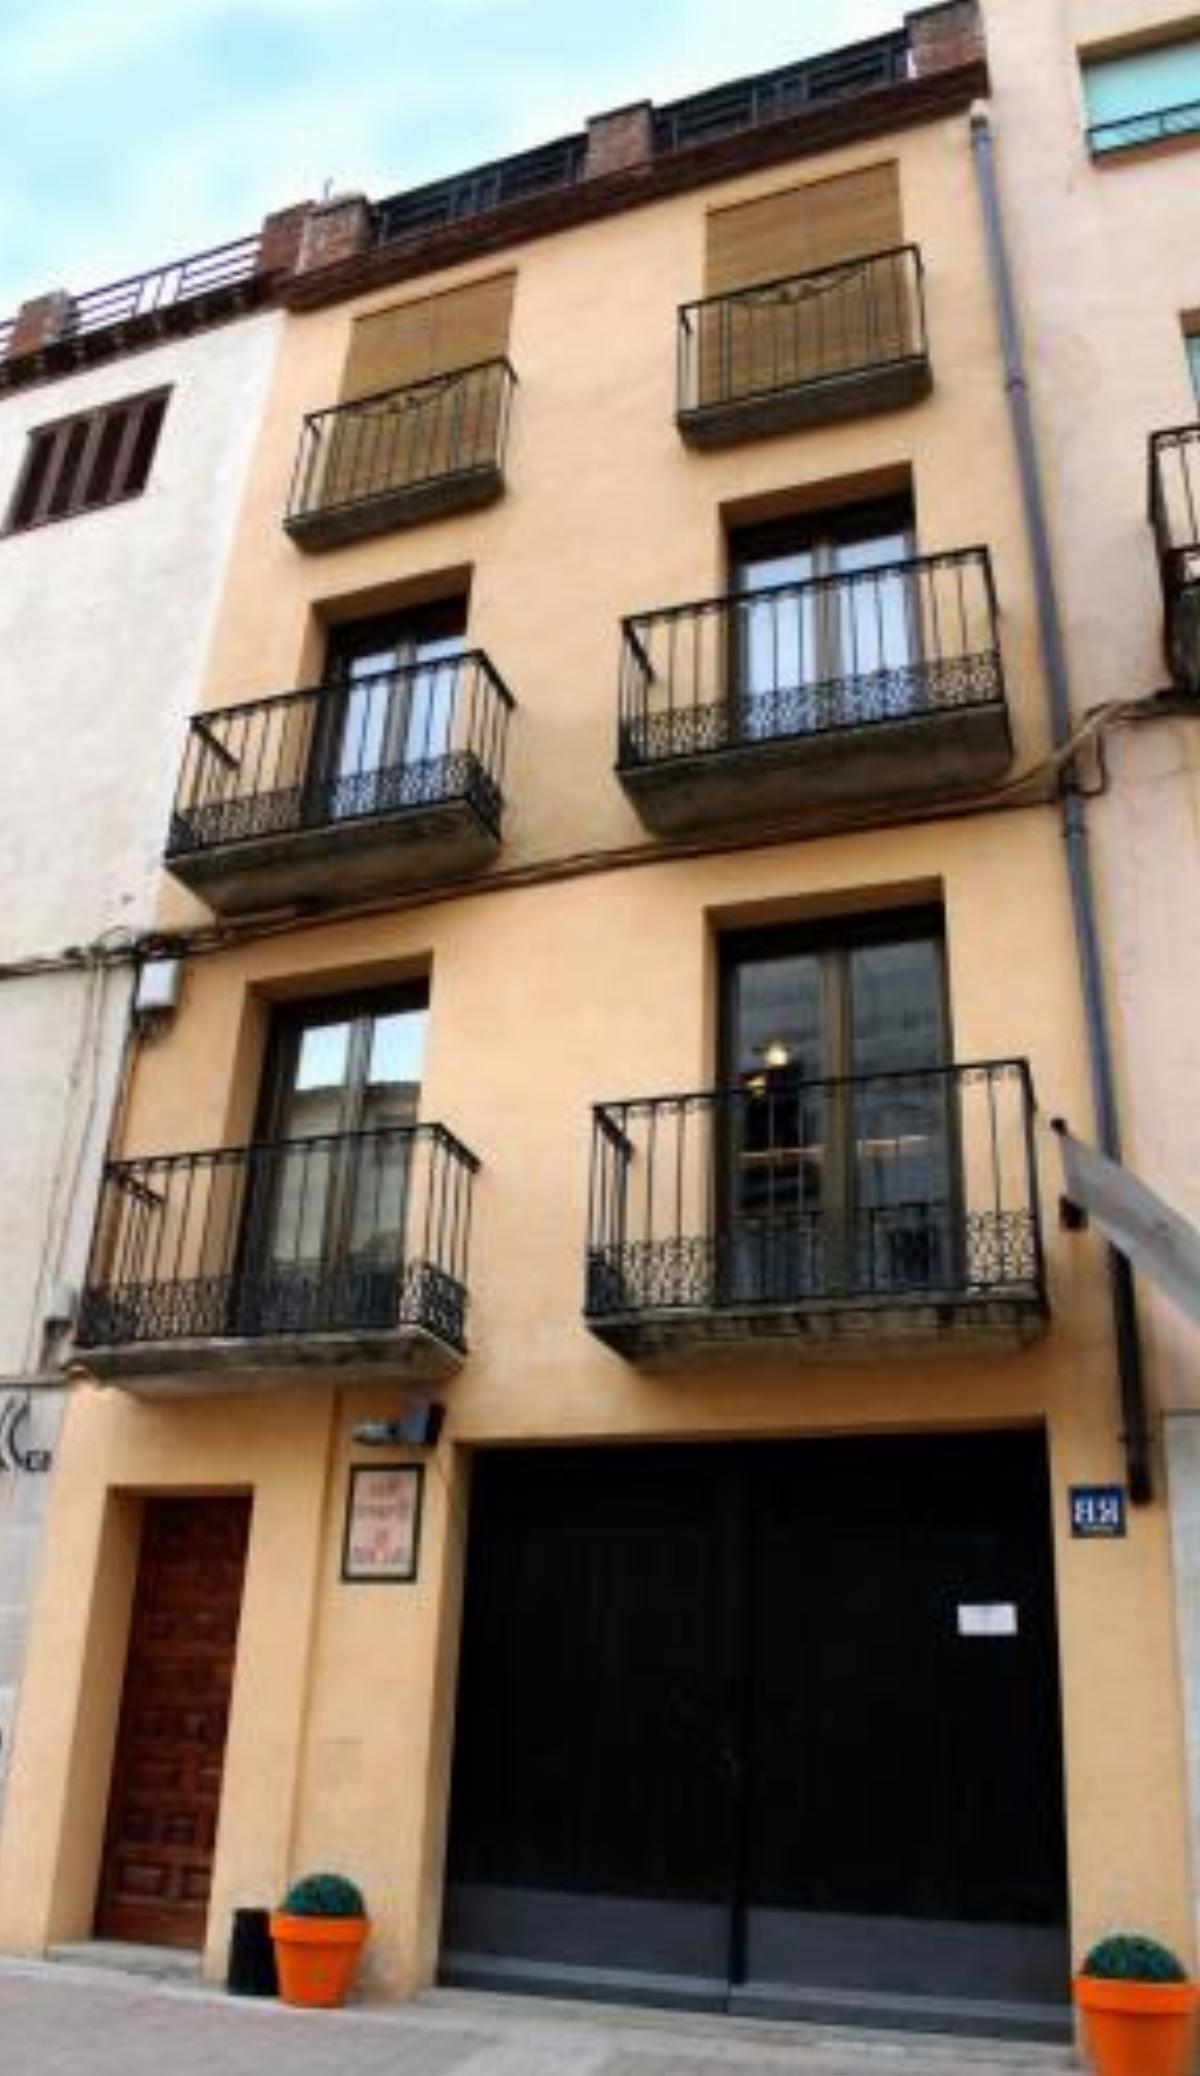 Apartaments La Font Vella de Falset Hotel Falset Spain